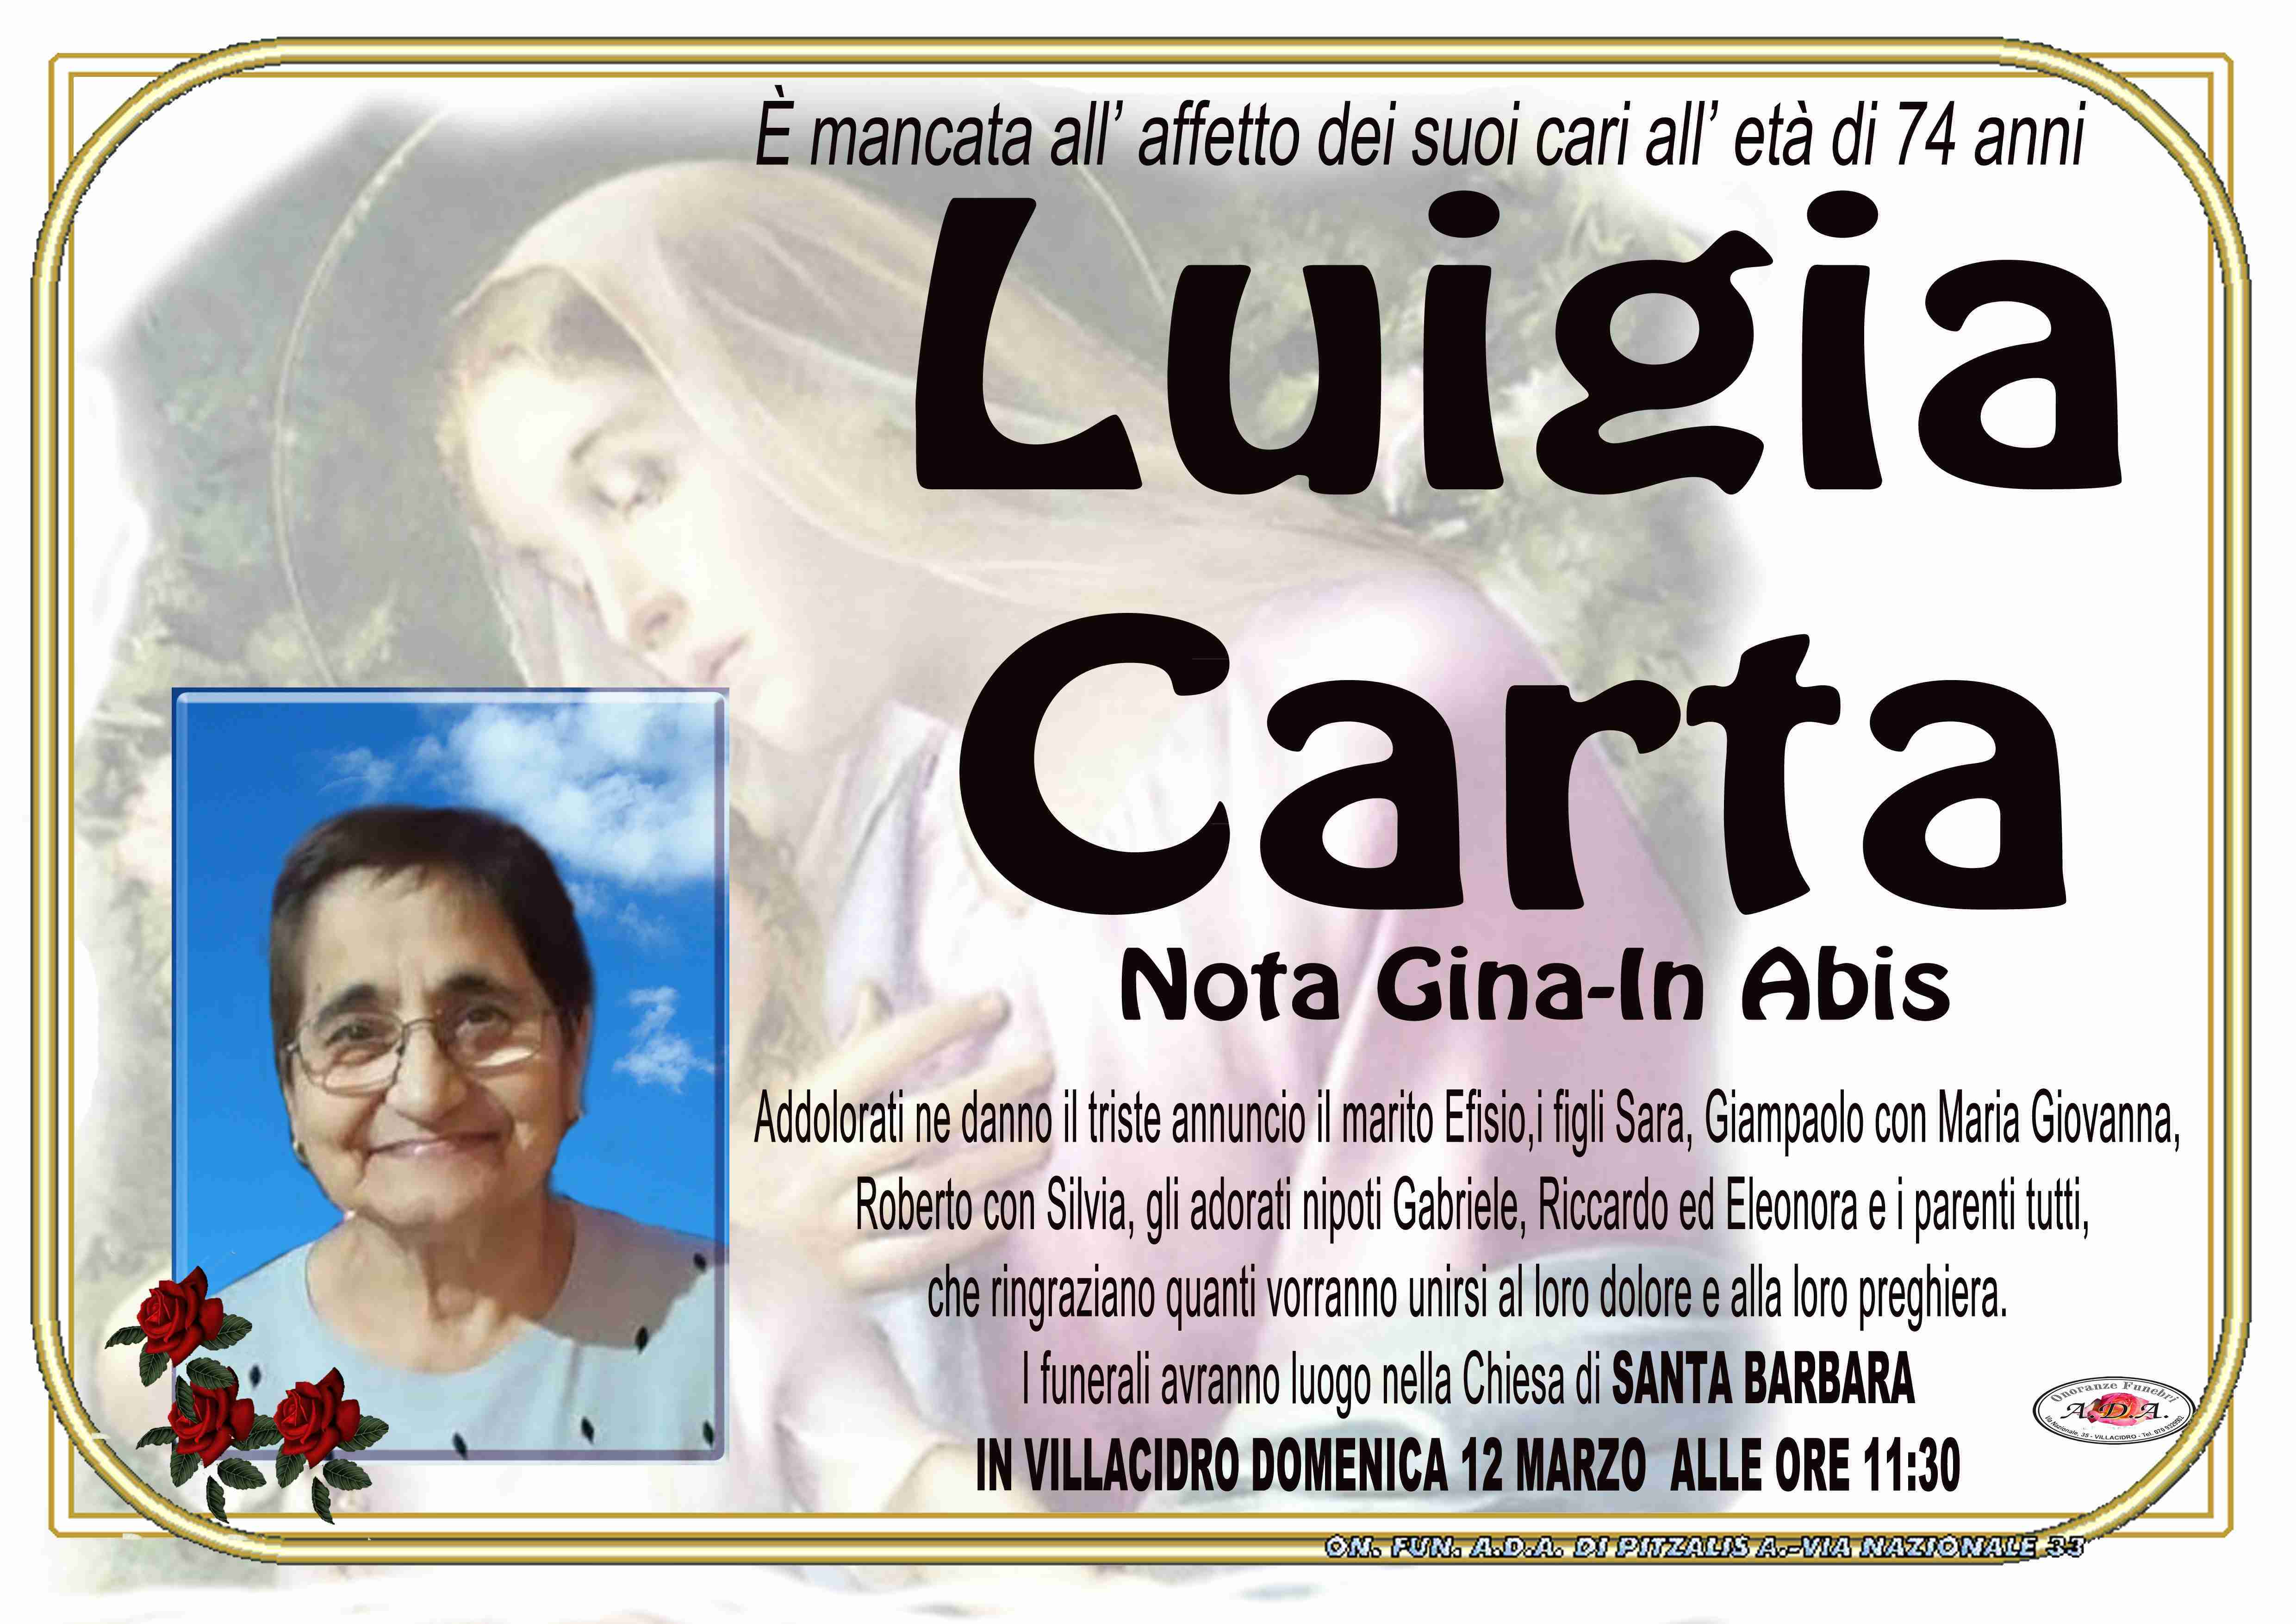 Luigia Carta